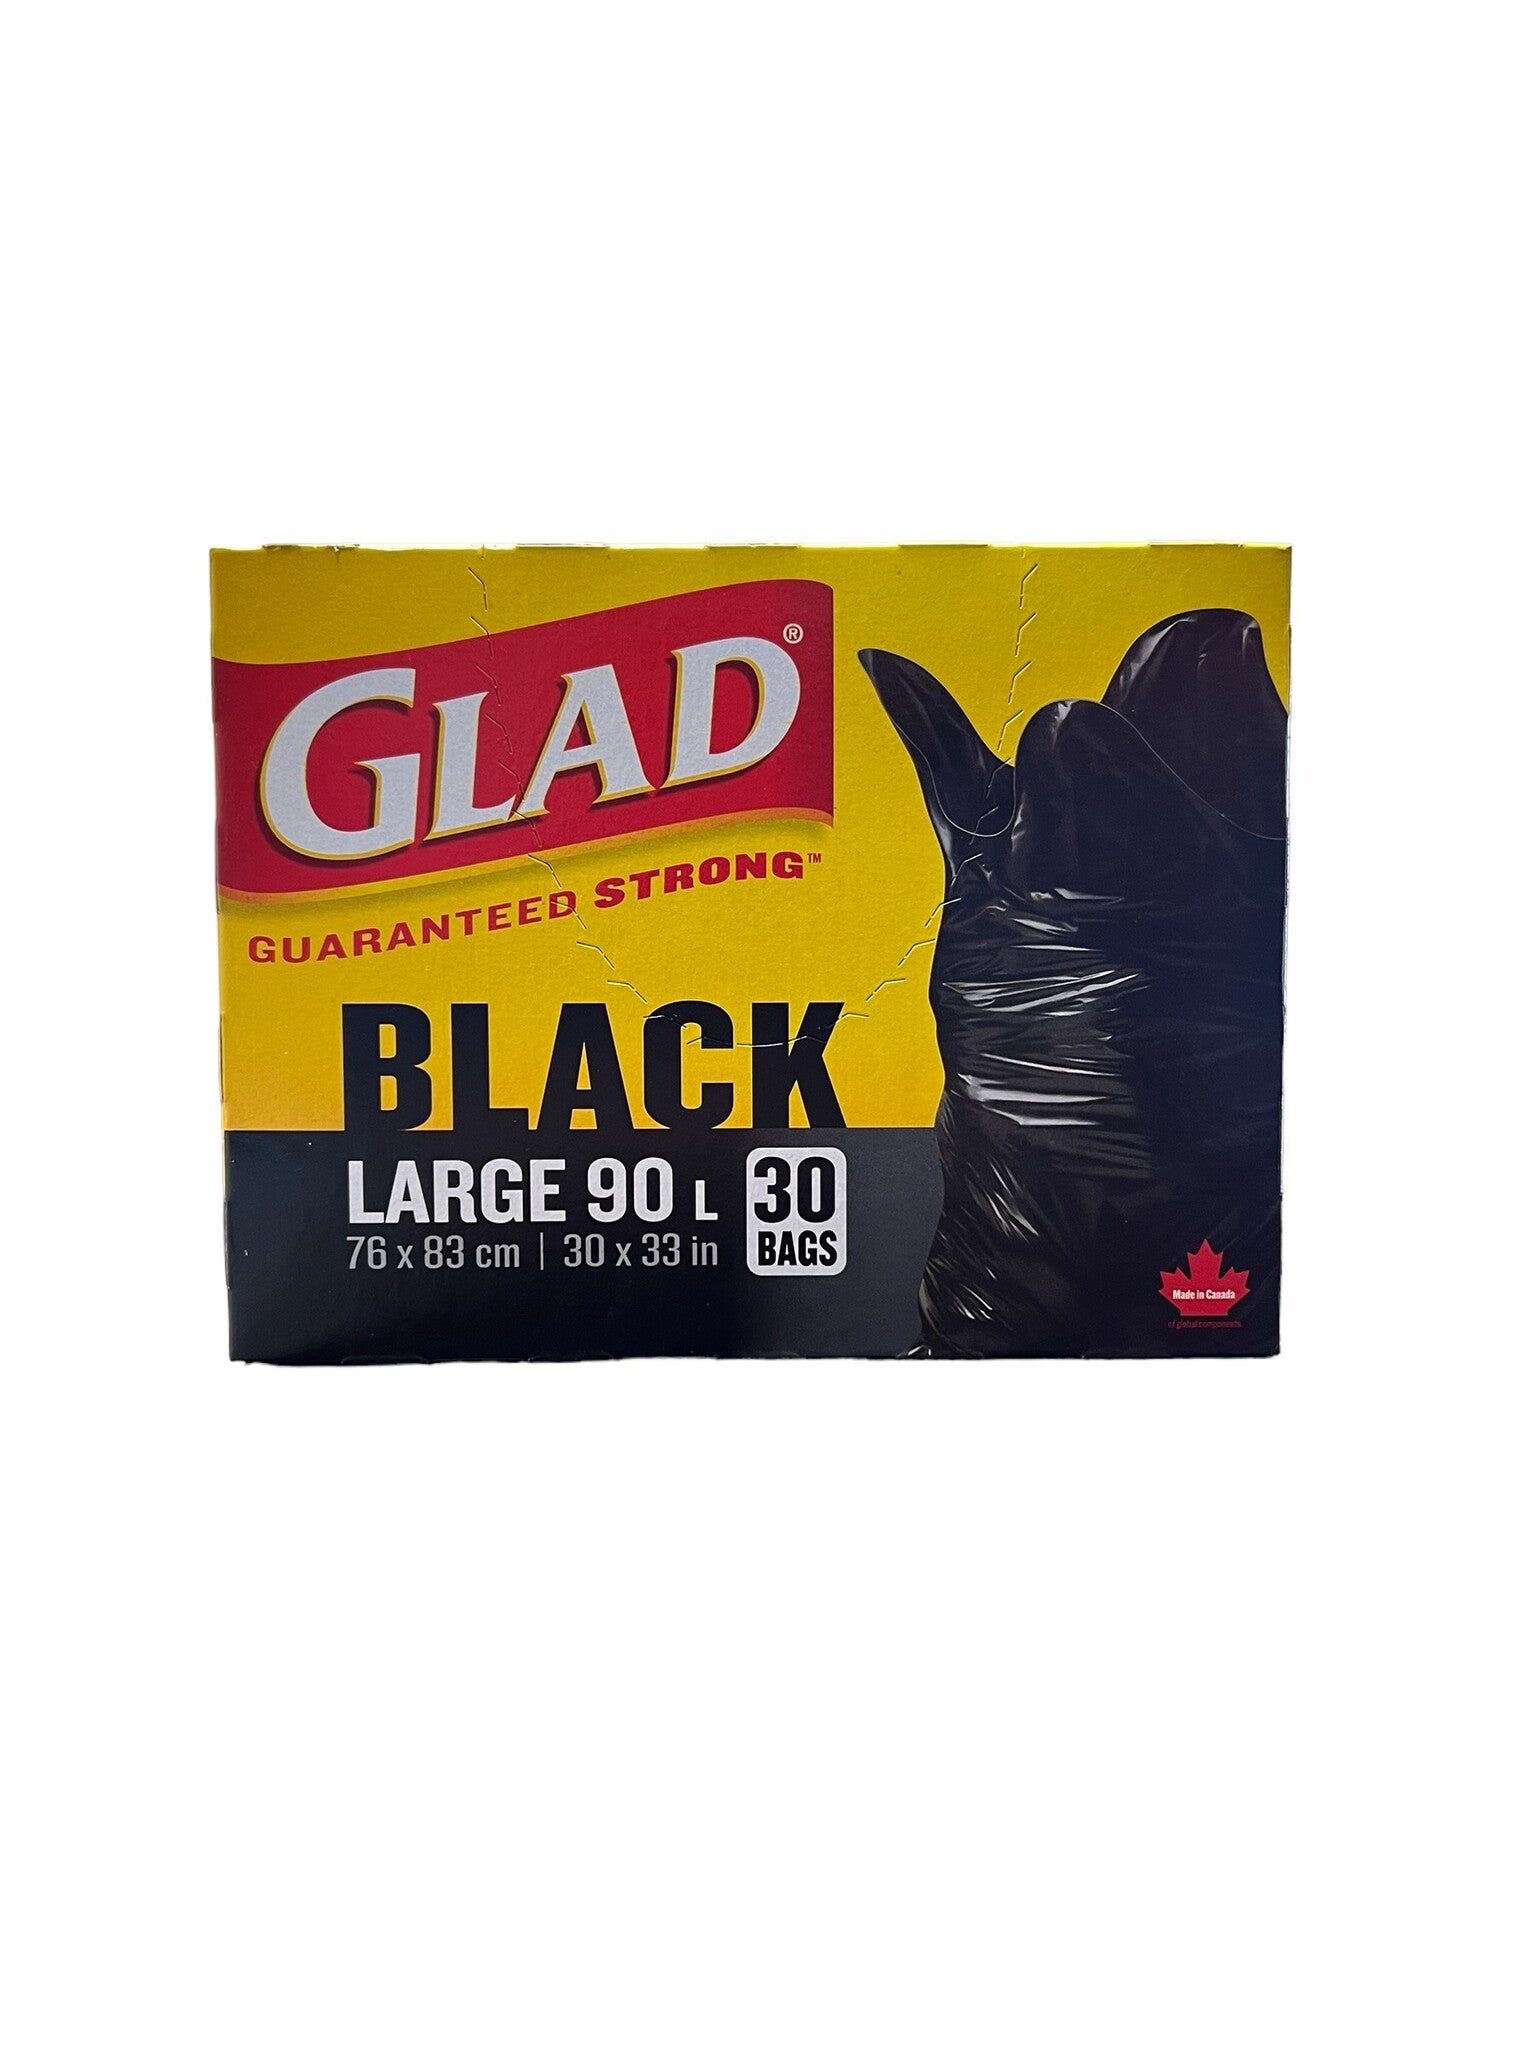 Glad Guaranteed Strong 30 Gallon Lg Blk Trash Bags, 15 ct